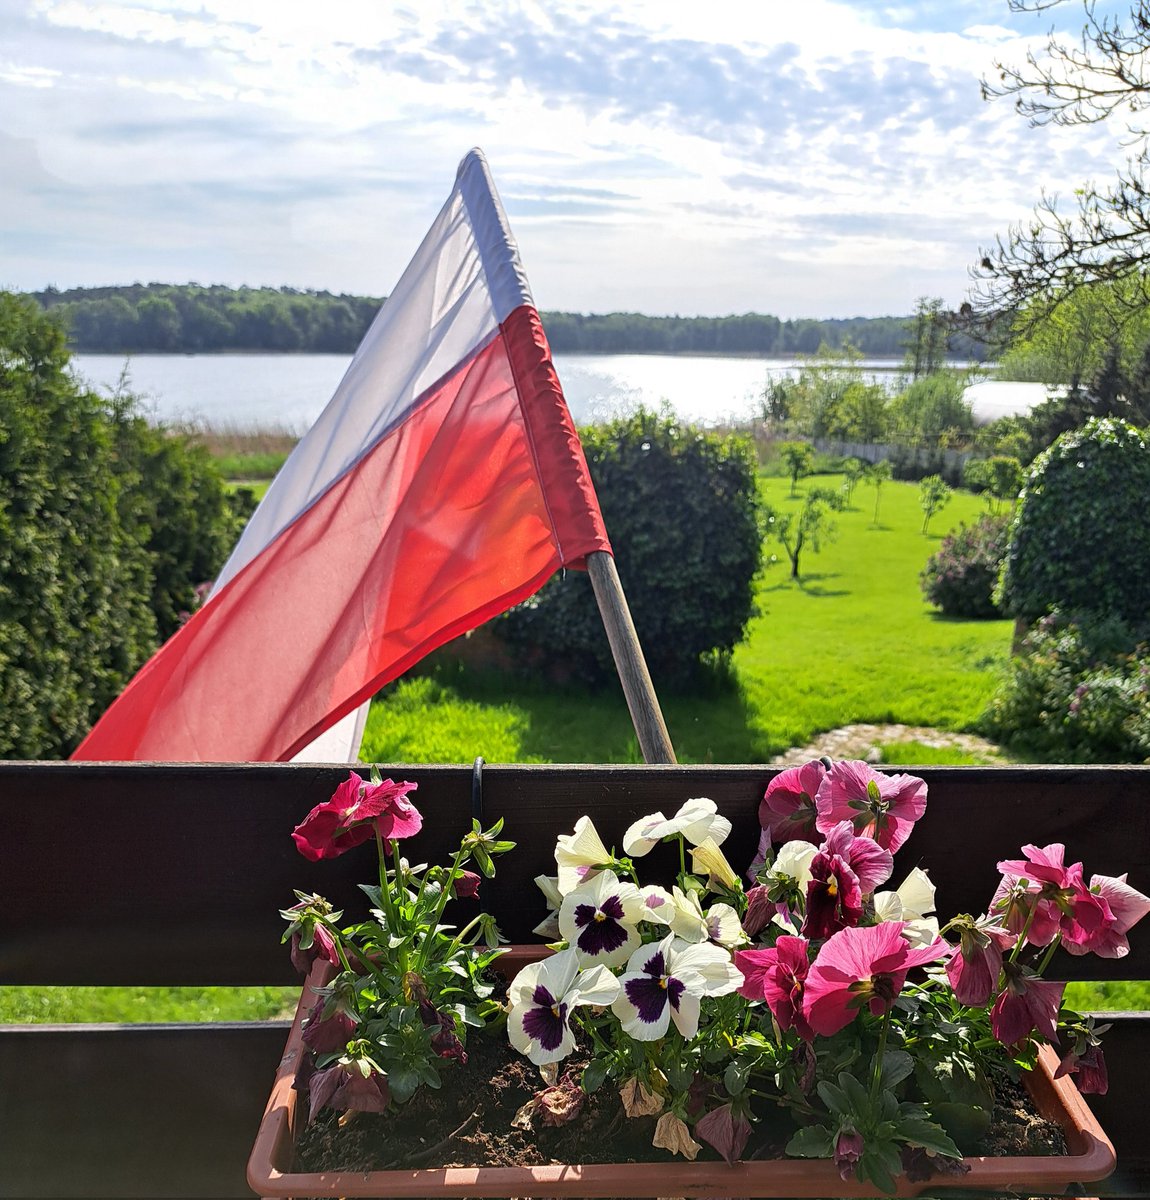 Dziś Dzień Flagi - i Polonii. Pozdrawiam wszystkich rodaków zagranicą - zwłaszcza tak mi bliską Polonię kanadyjską!